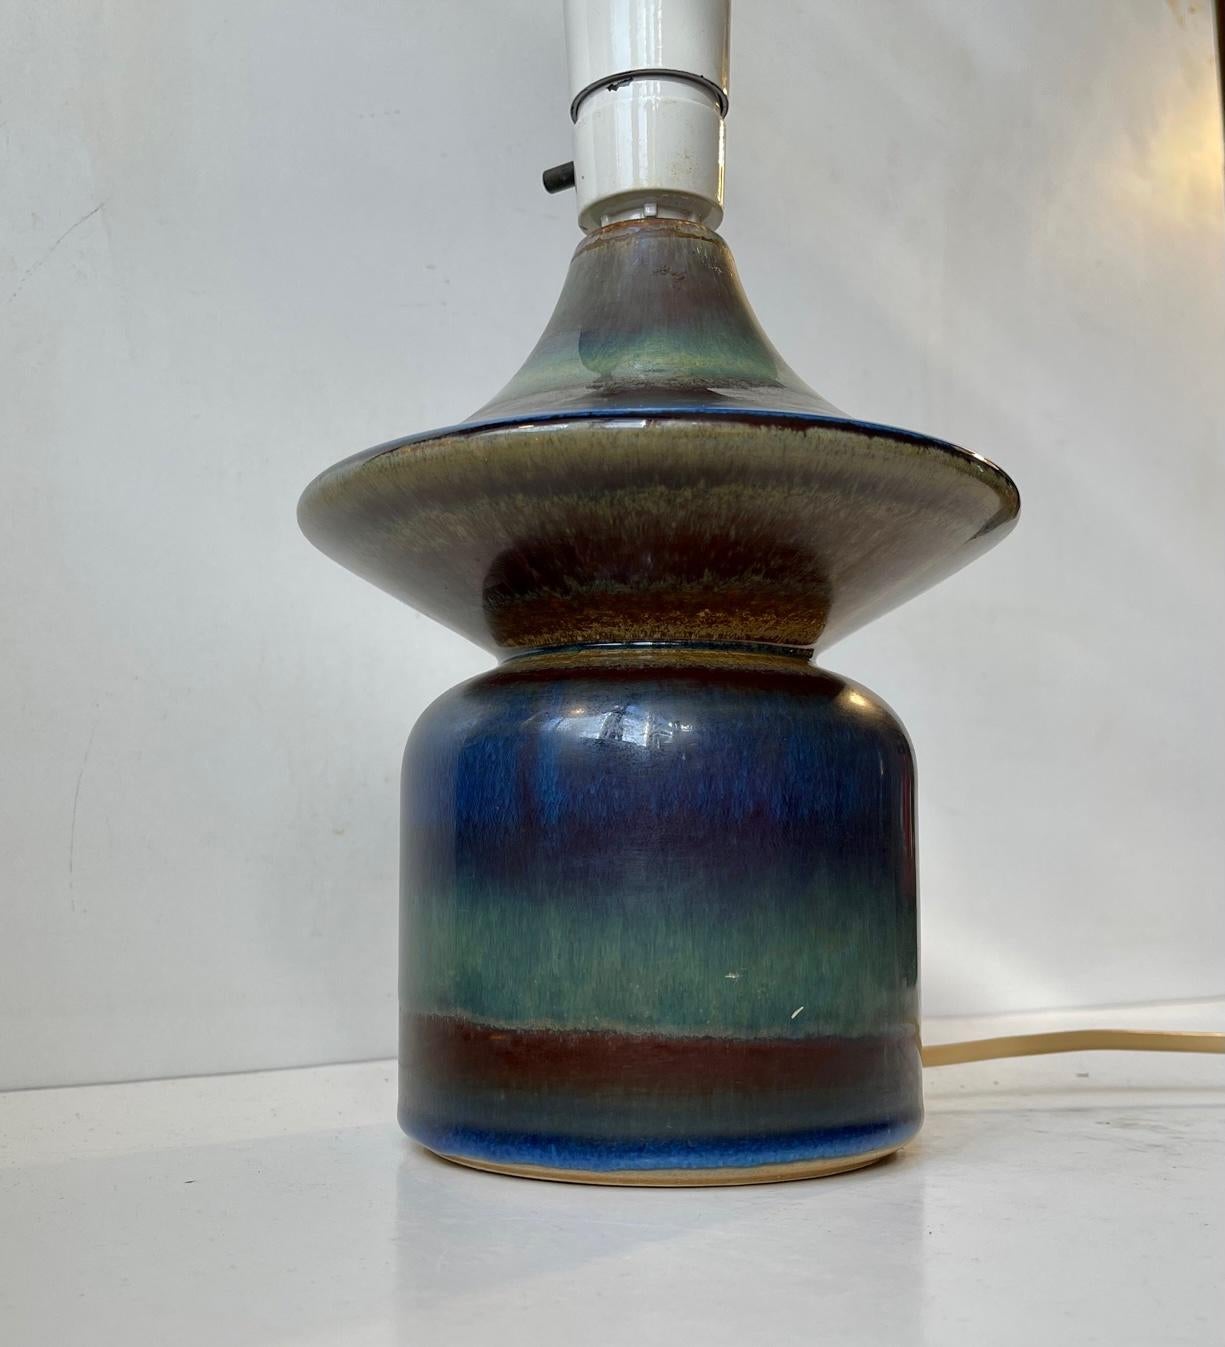 Glazed Ceramic Diablo Table Lamp in Multiple Glazes by Einar Johansen for Søholm, 1960s For Sale